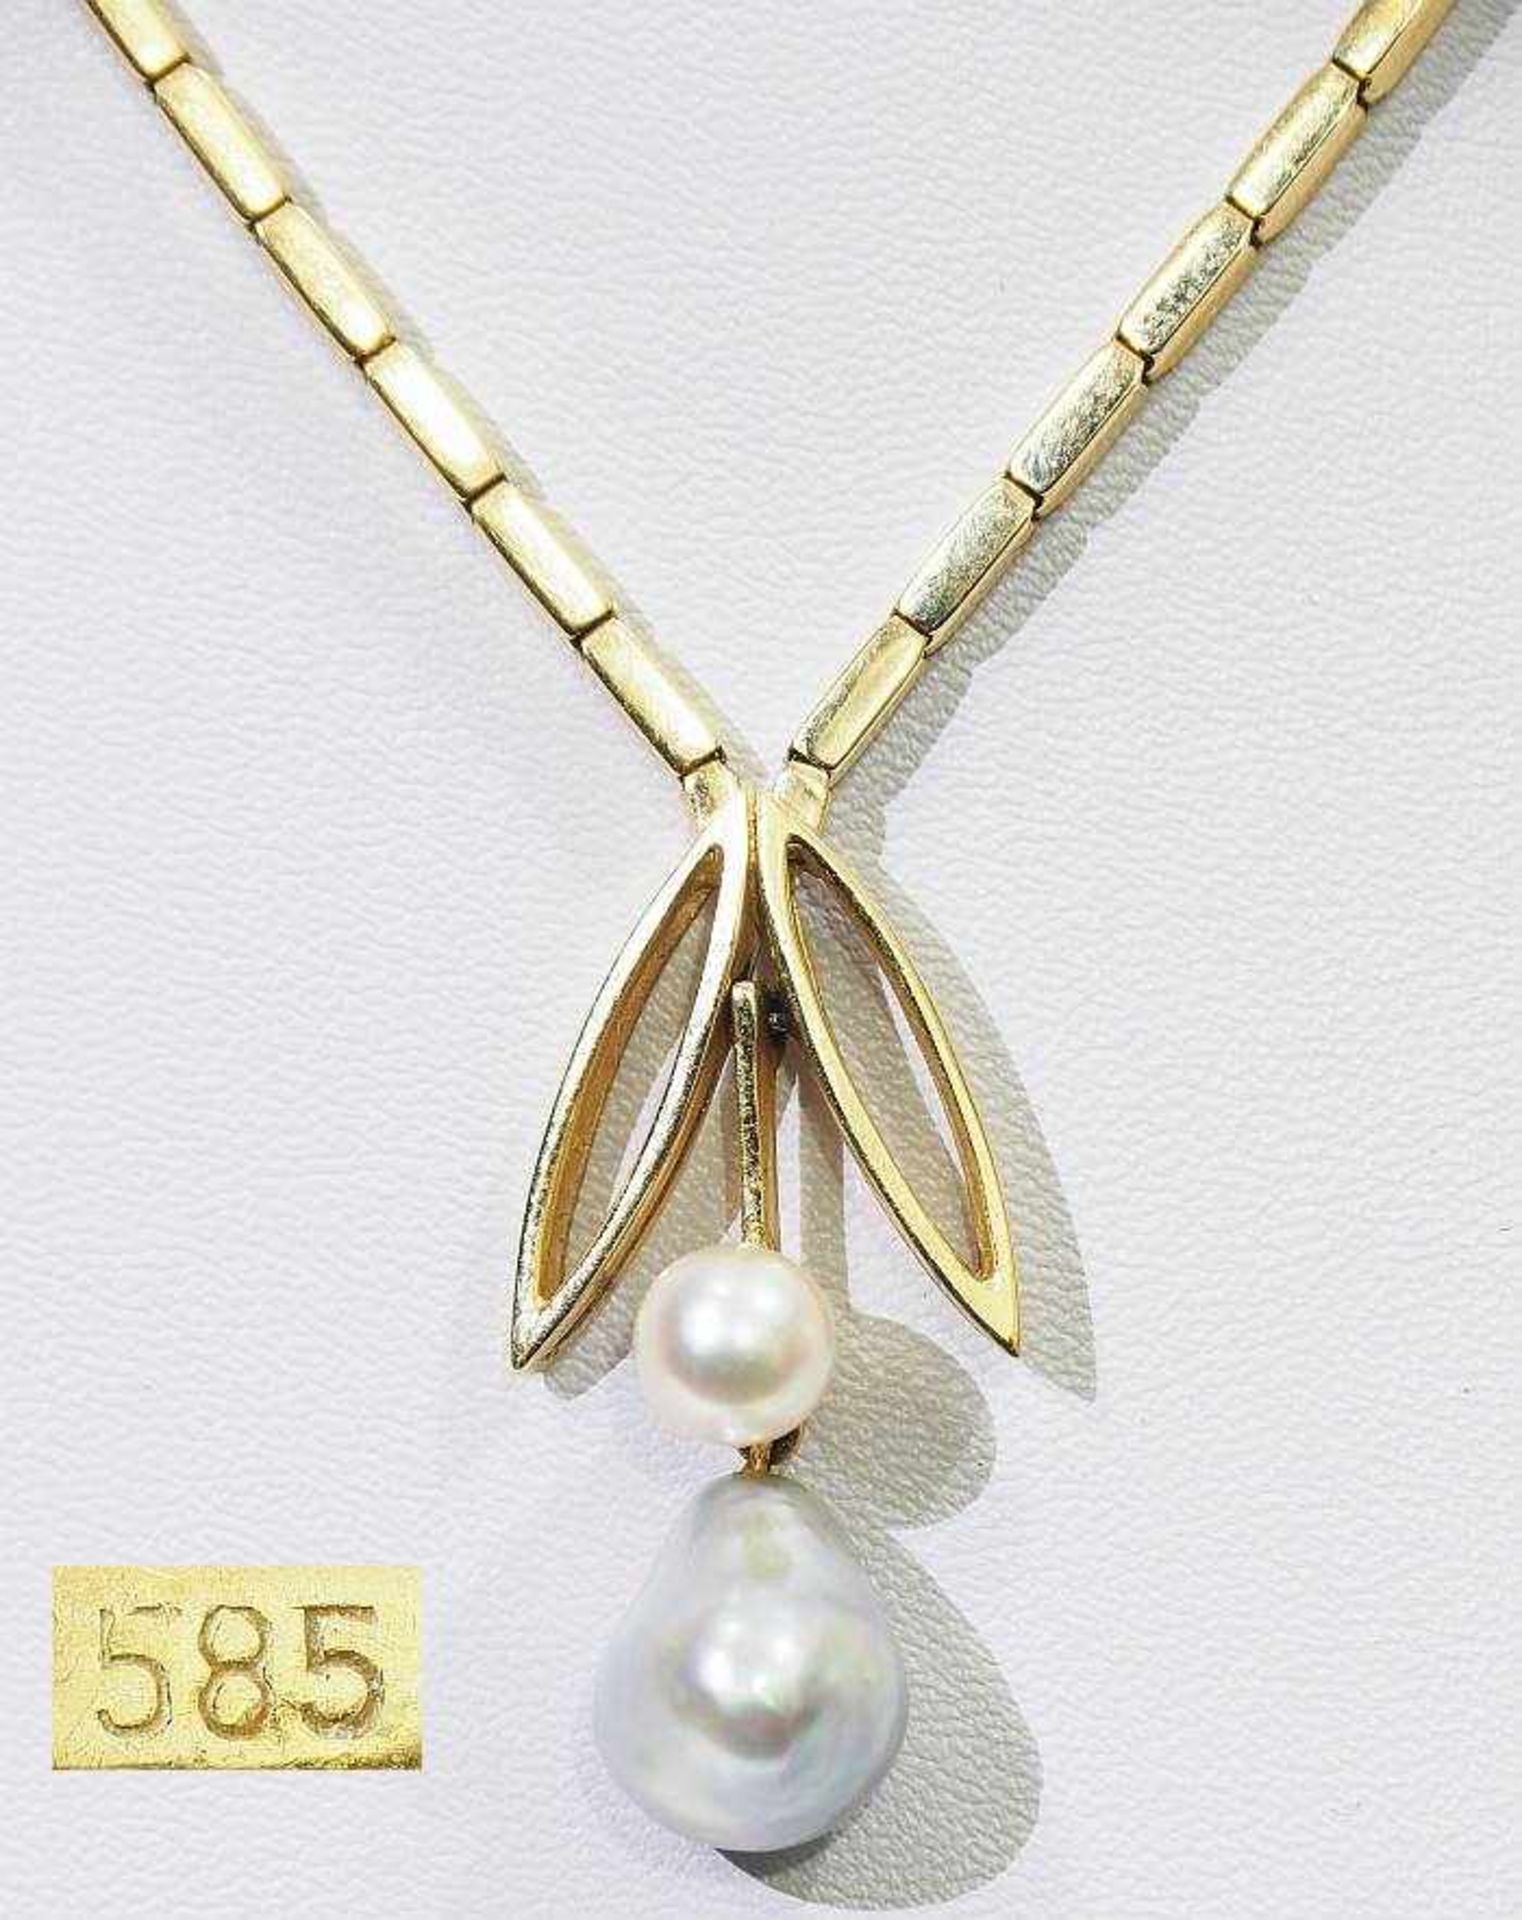 Collier.Collier, 585er Gelbgold, stilisierte florale Abhängung mit weißer Perle und grauer